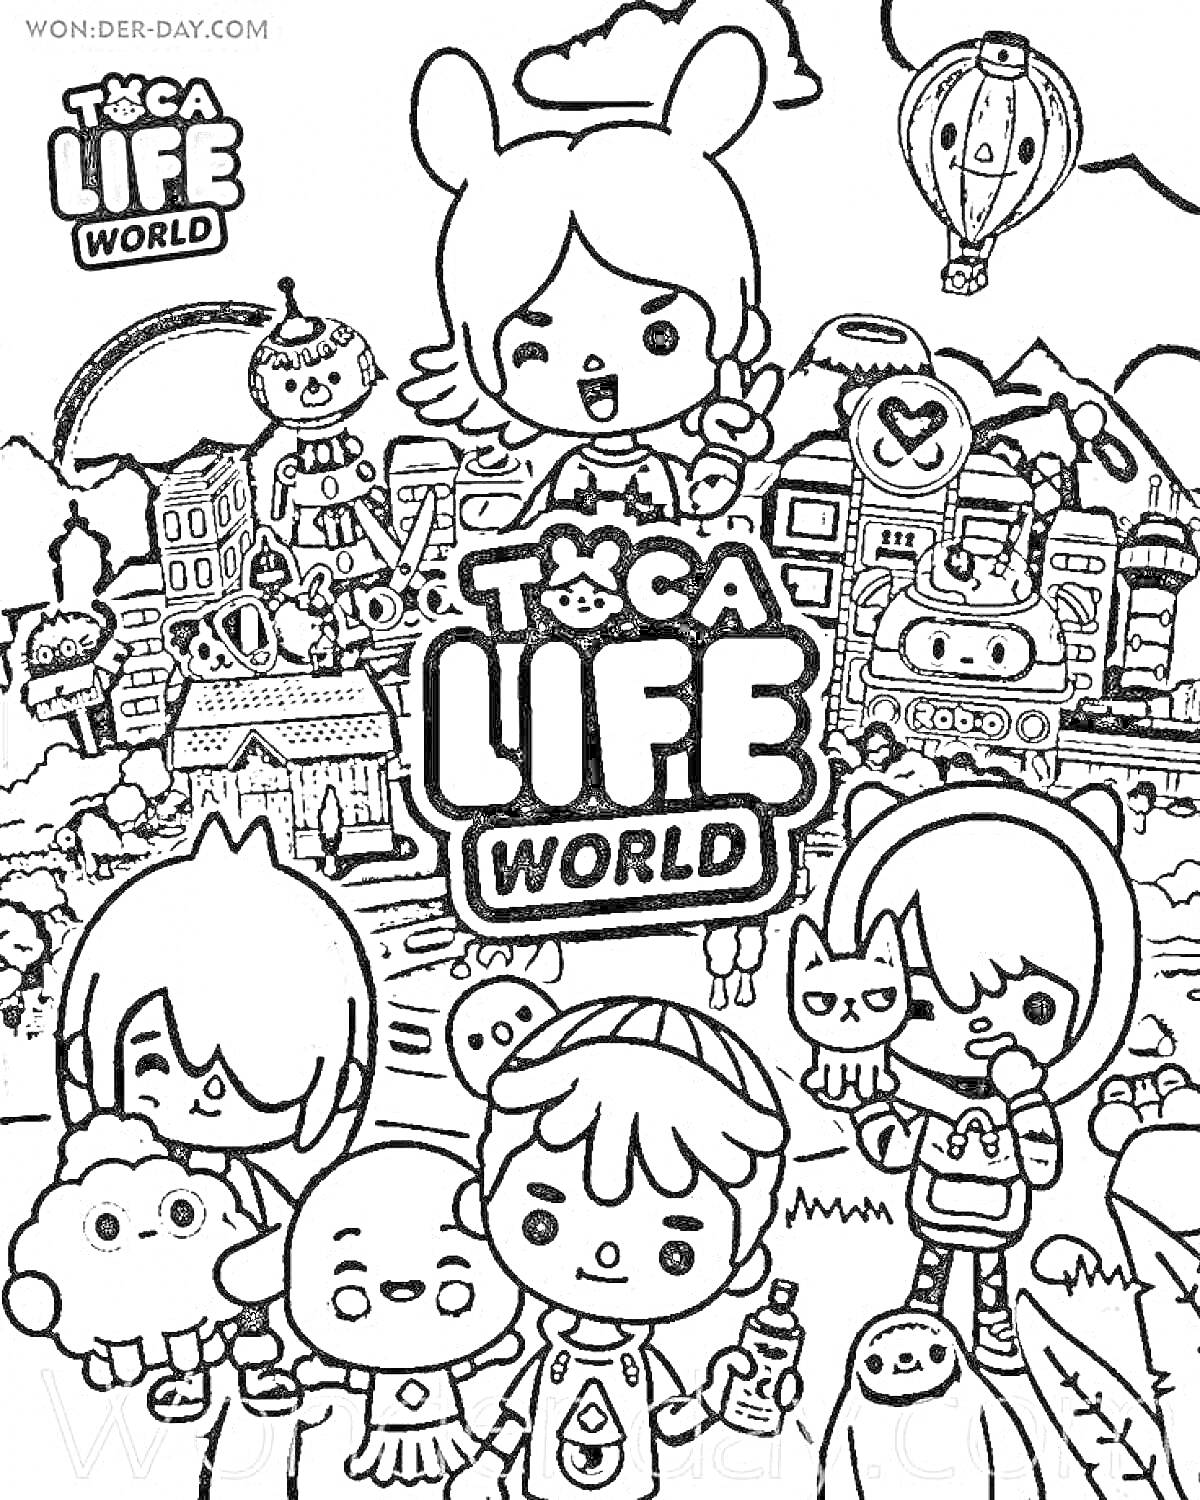 РаскраскаПерсонажи из игры Toca Life World на фоне их мира, включая дома, воздушный шар и различные локации